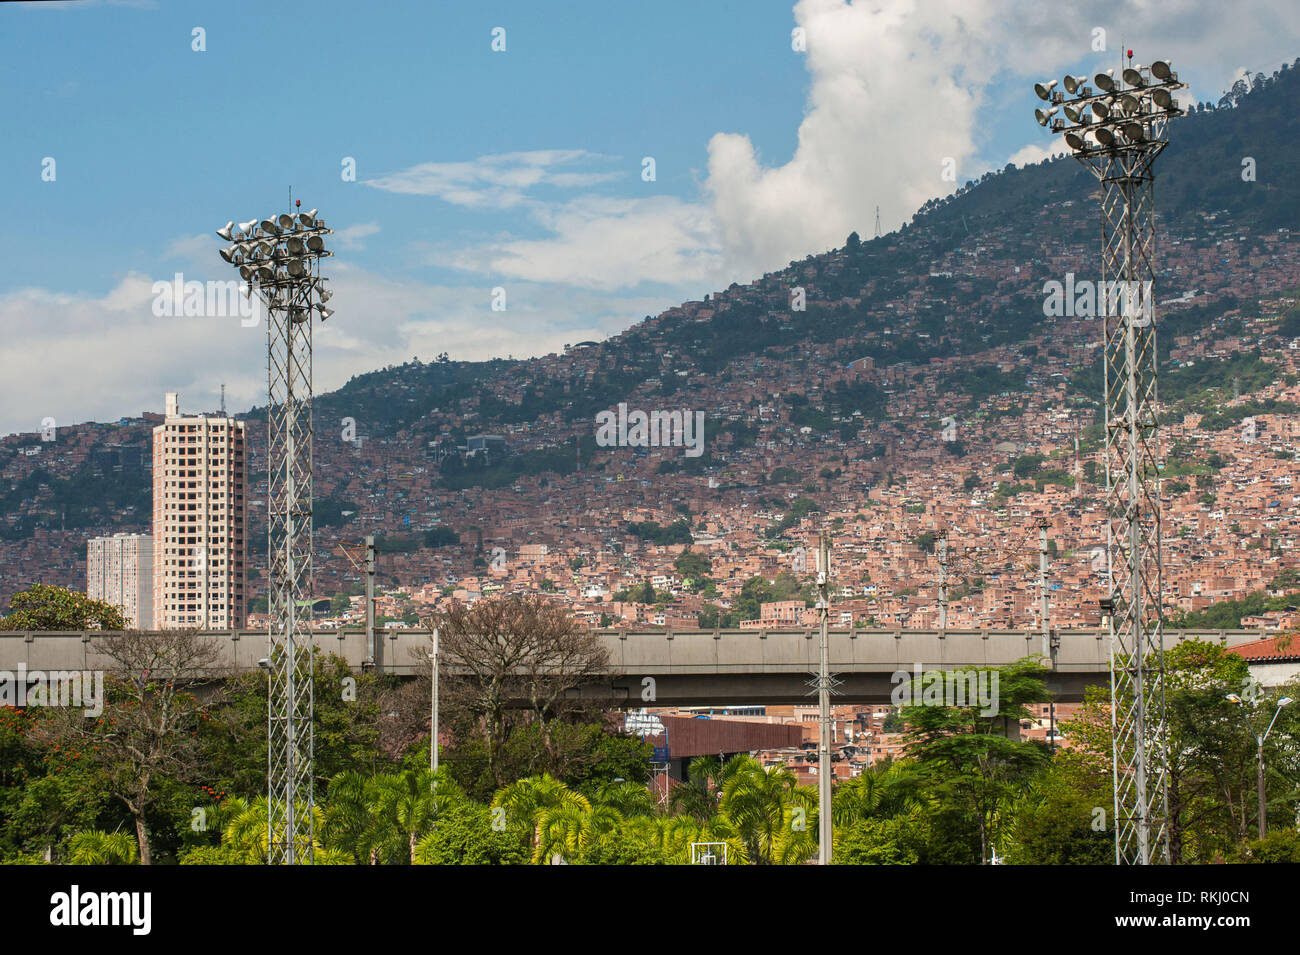 Medellin, Antioquia, Colombia: Urban landscape. Stock Photo